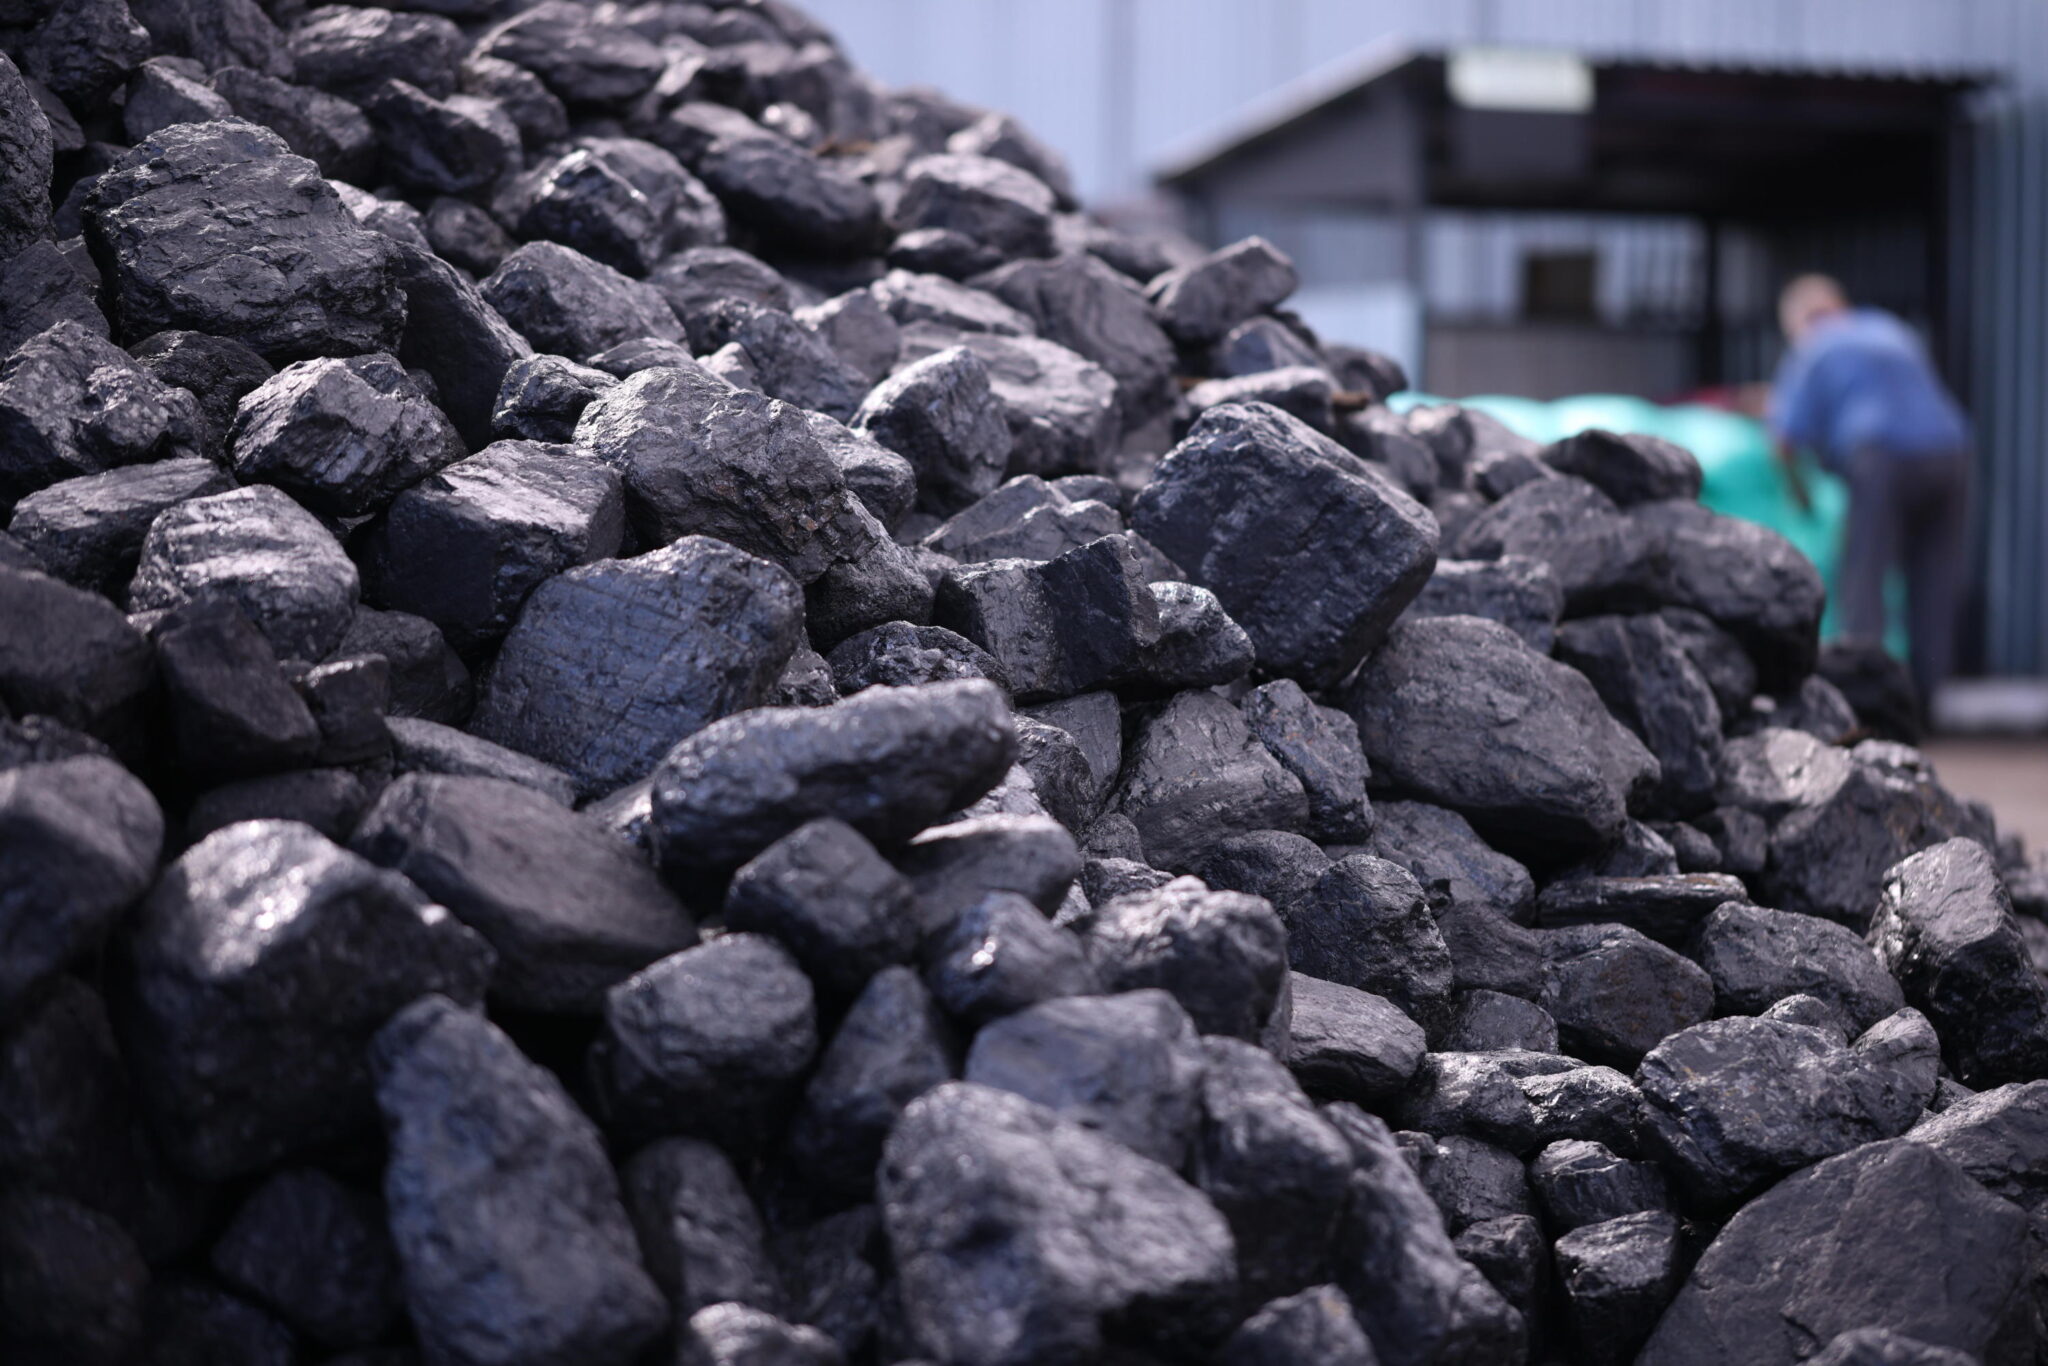 PGNiG Termika: Estamos listos para distribuir carbón en la capital